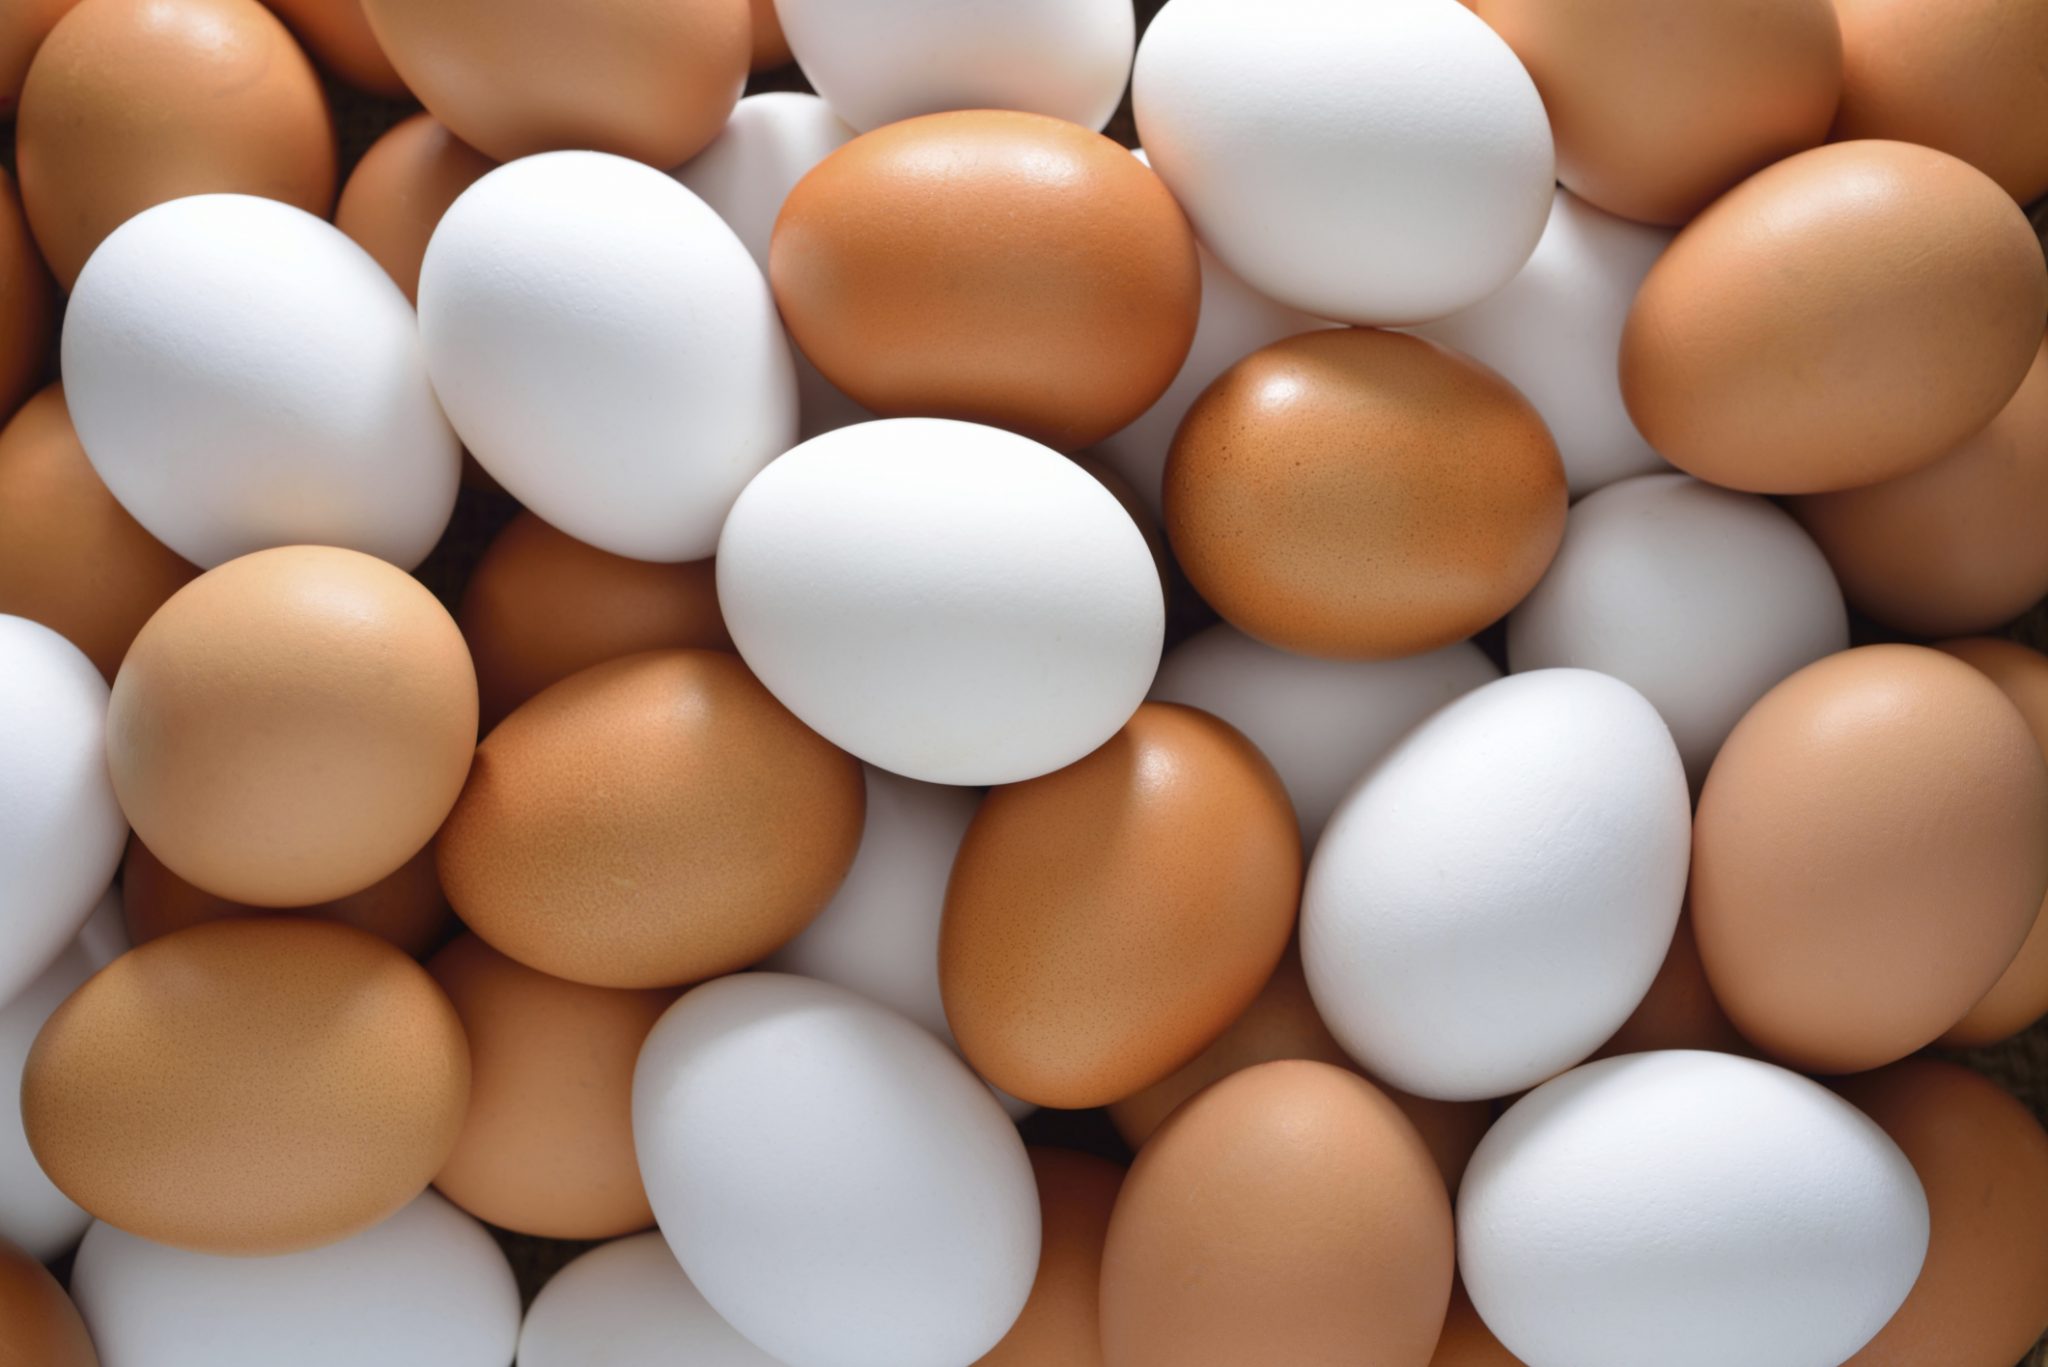 Produção de ovos de galinha cresce 6% no primeiro trimestre